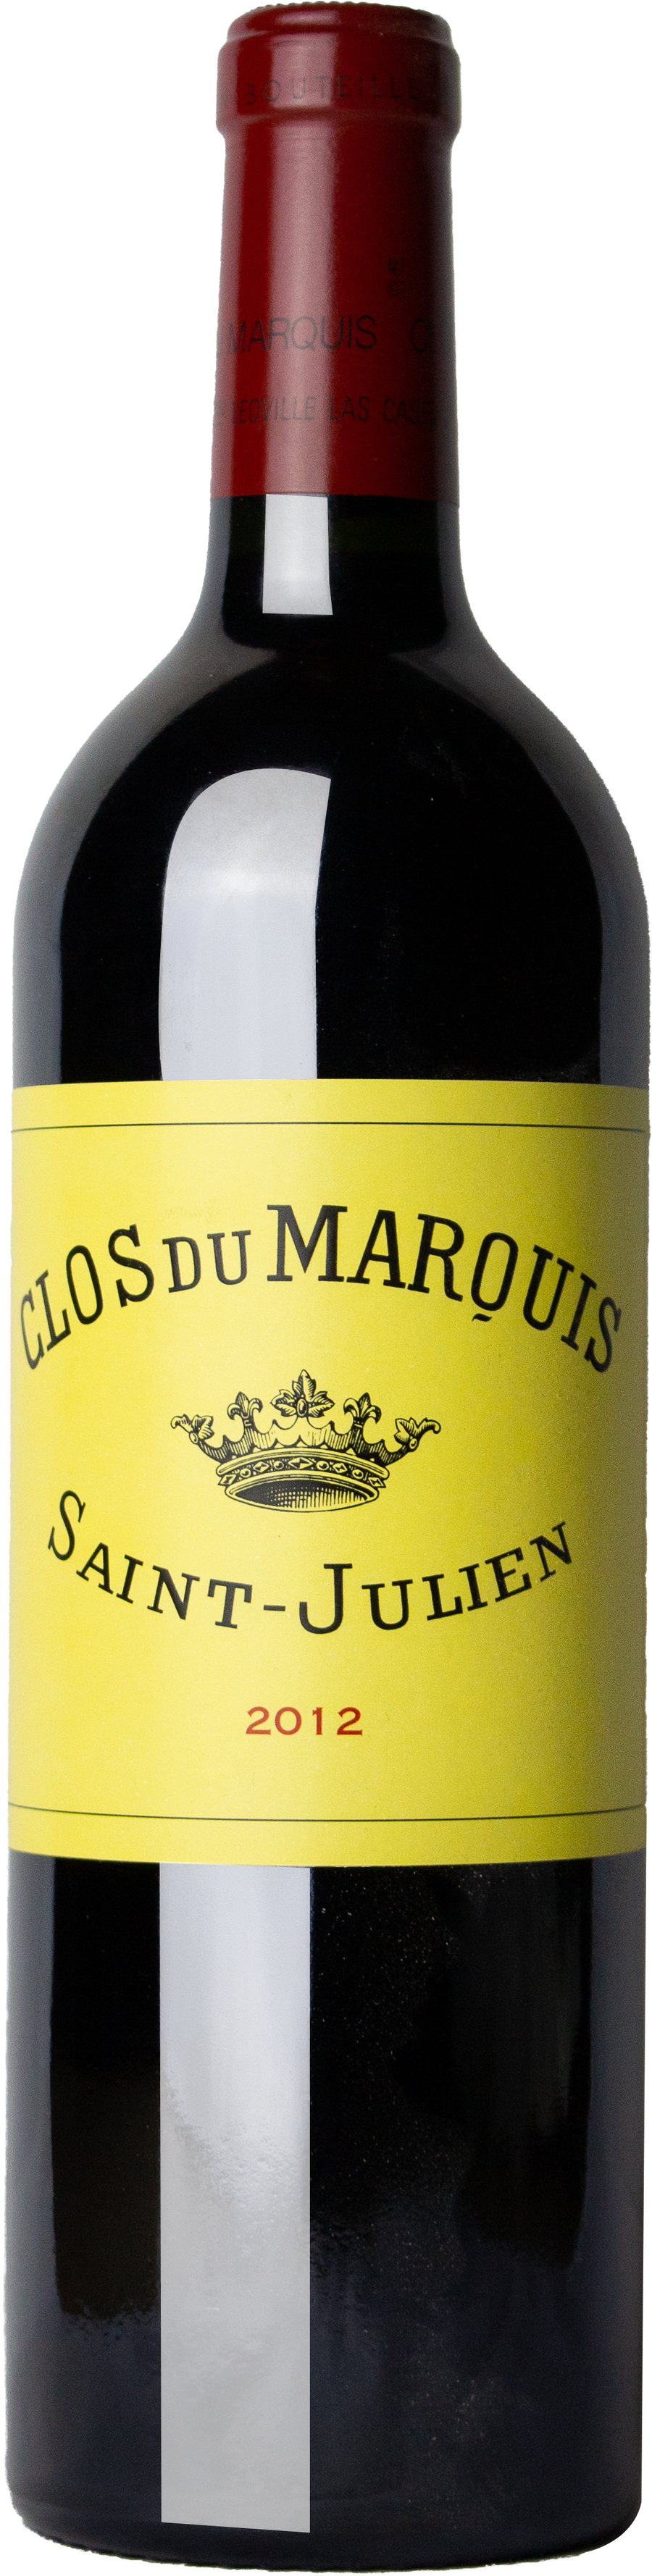 Clos du Marquis - Saint-Julien 2008